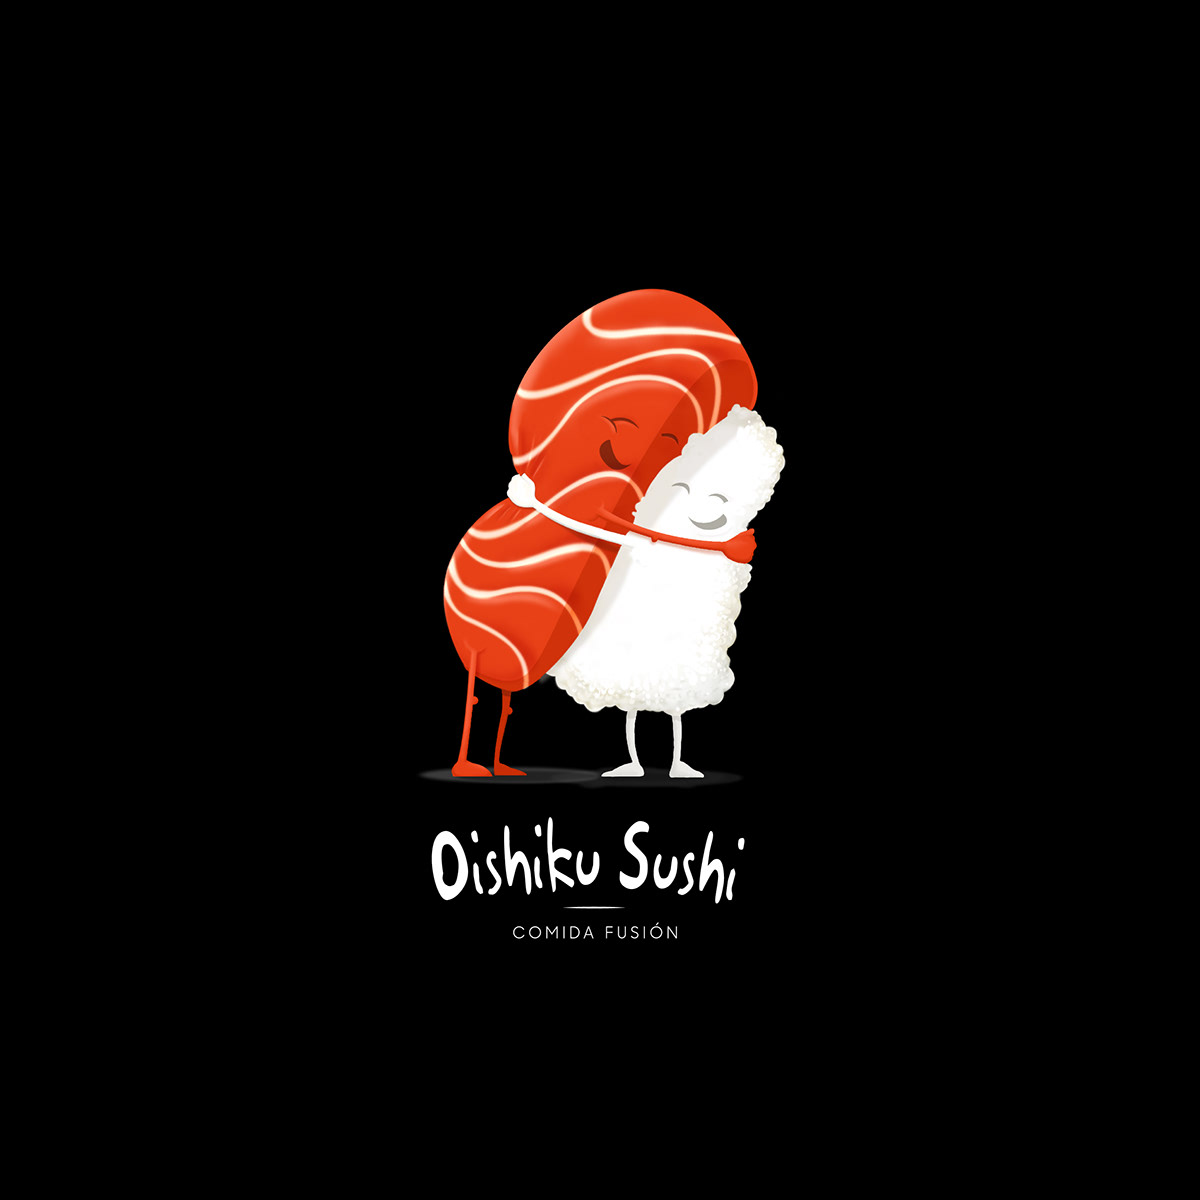 Sushi iustration dibujo Drawing  Logotipo marca